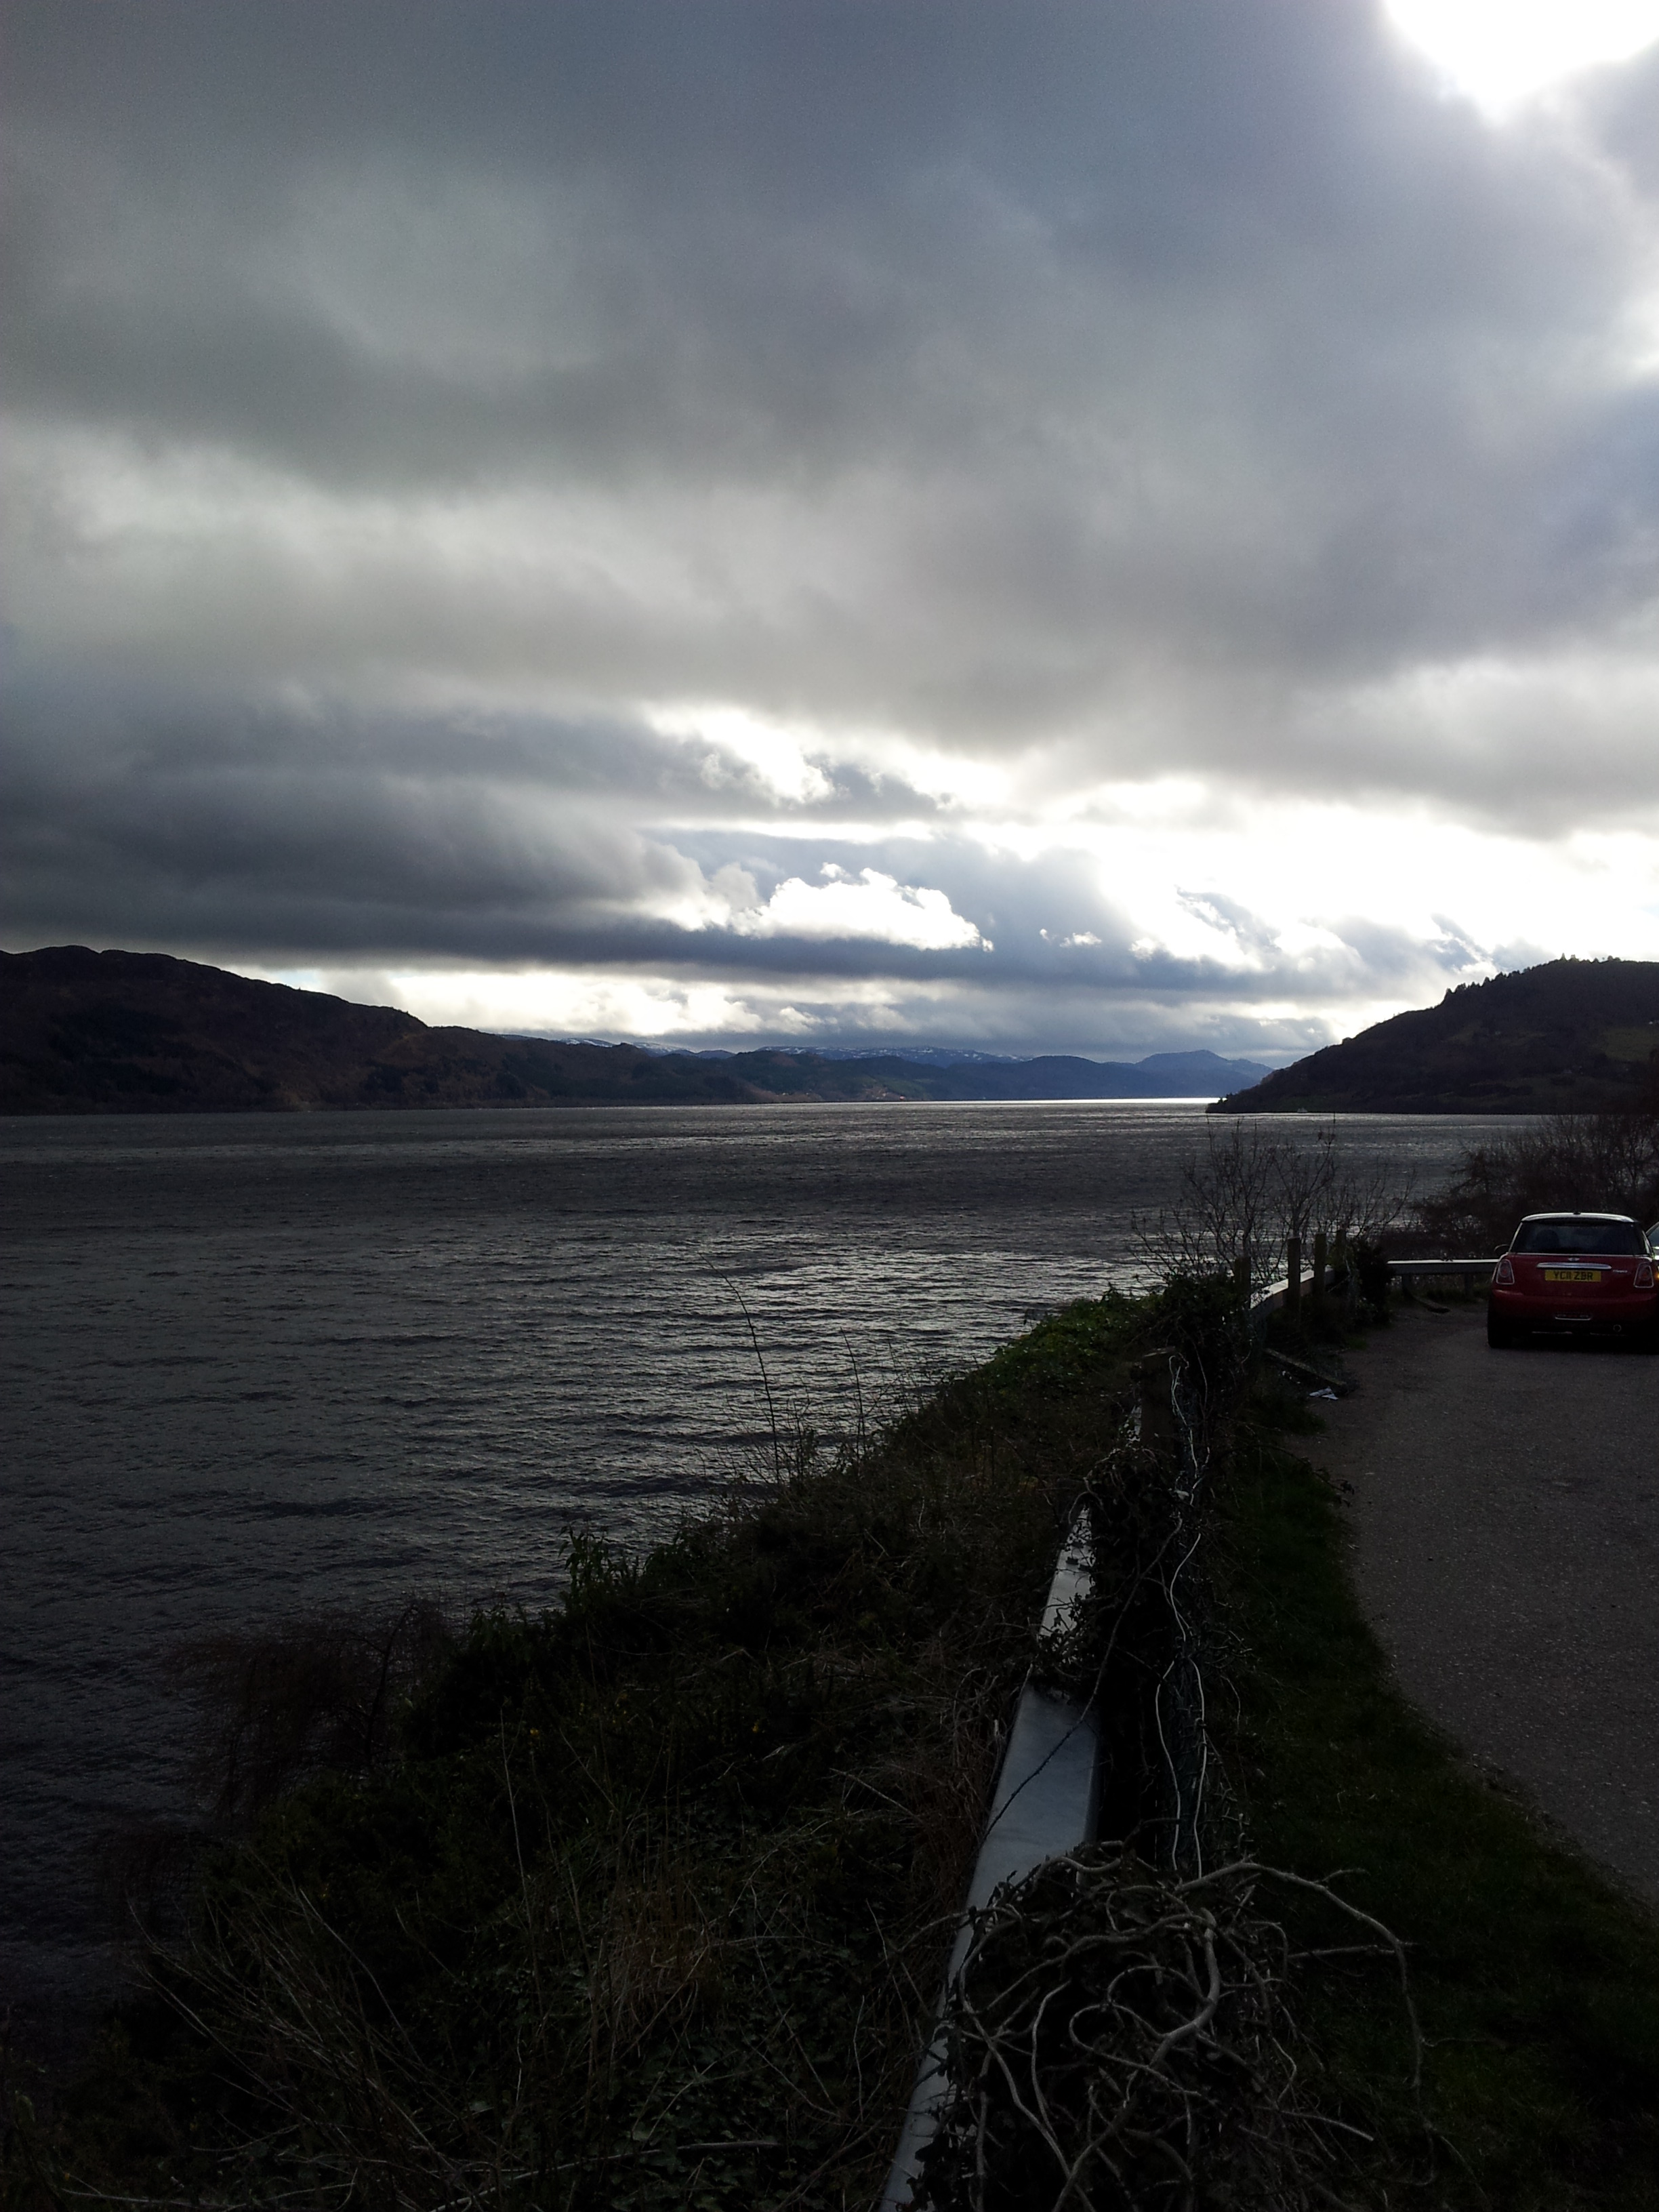 Loch Ness after Drumnadrochit.